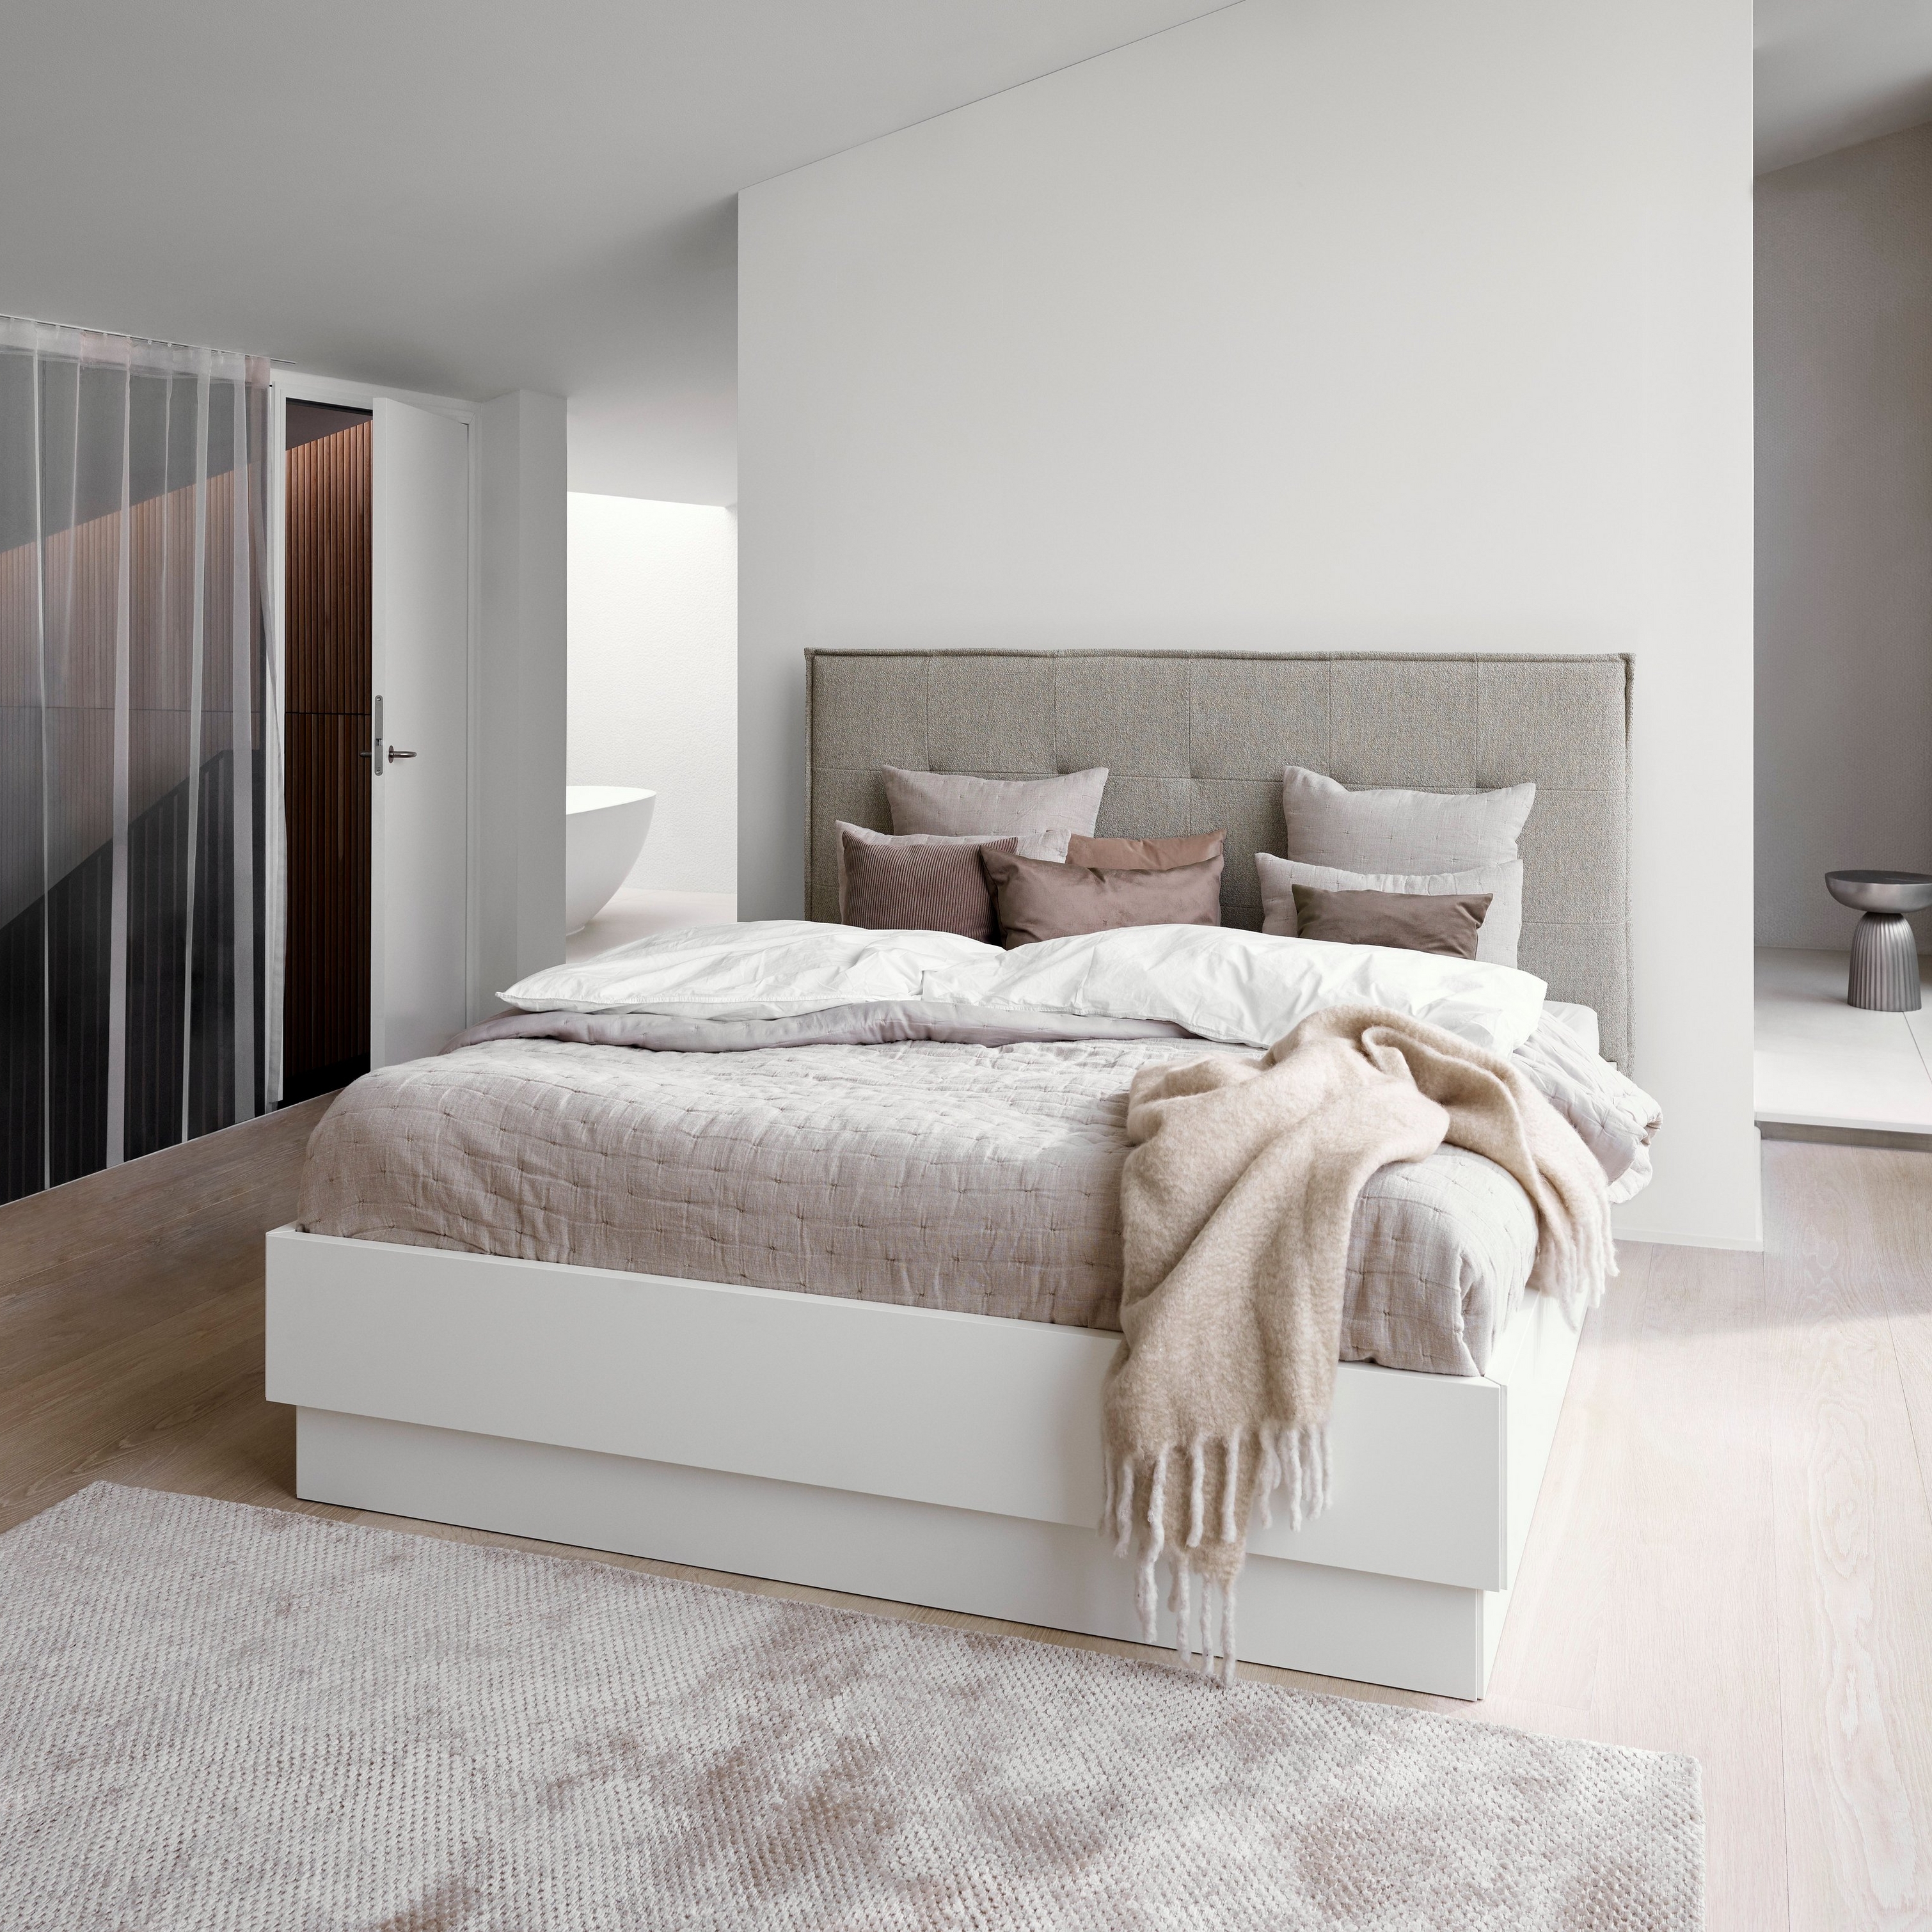 Dormitorio minimalista con cama tapizada gris, ropa de cama blanca y manta beige texturizada.